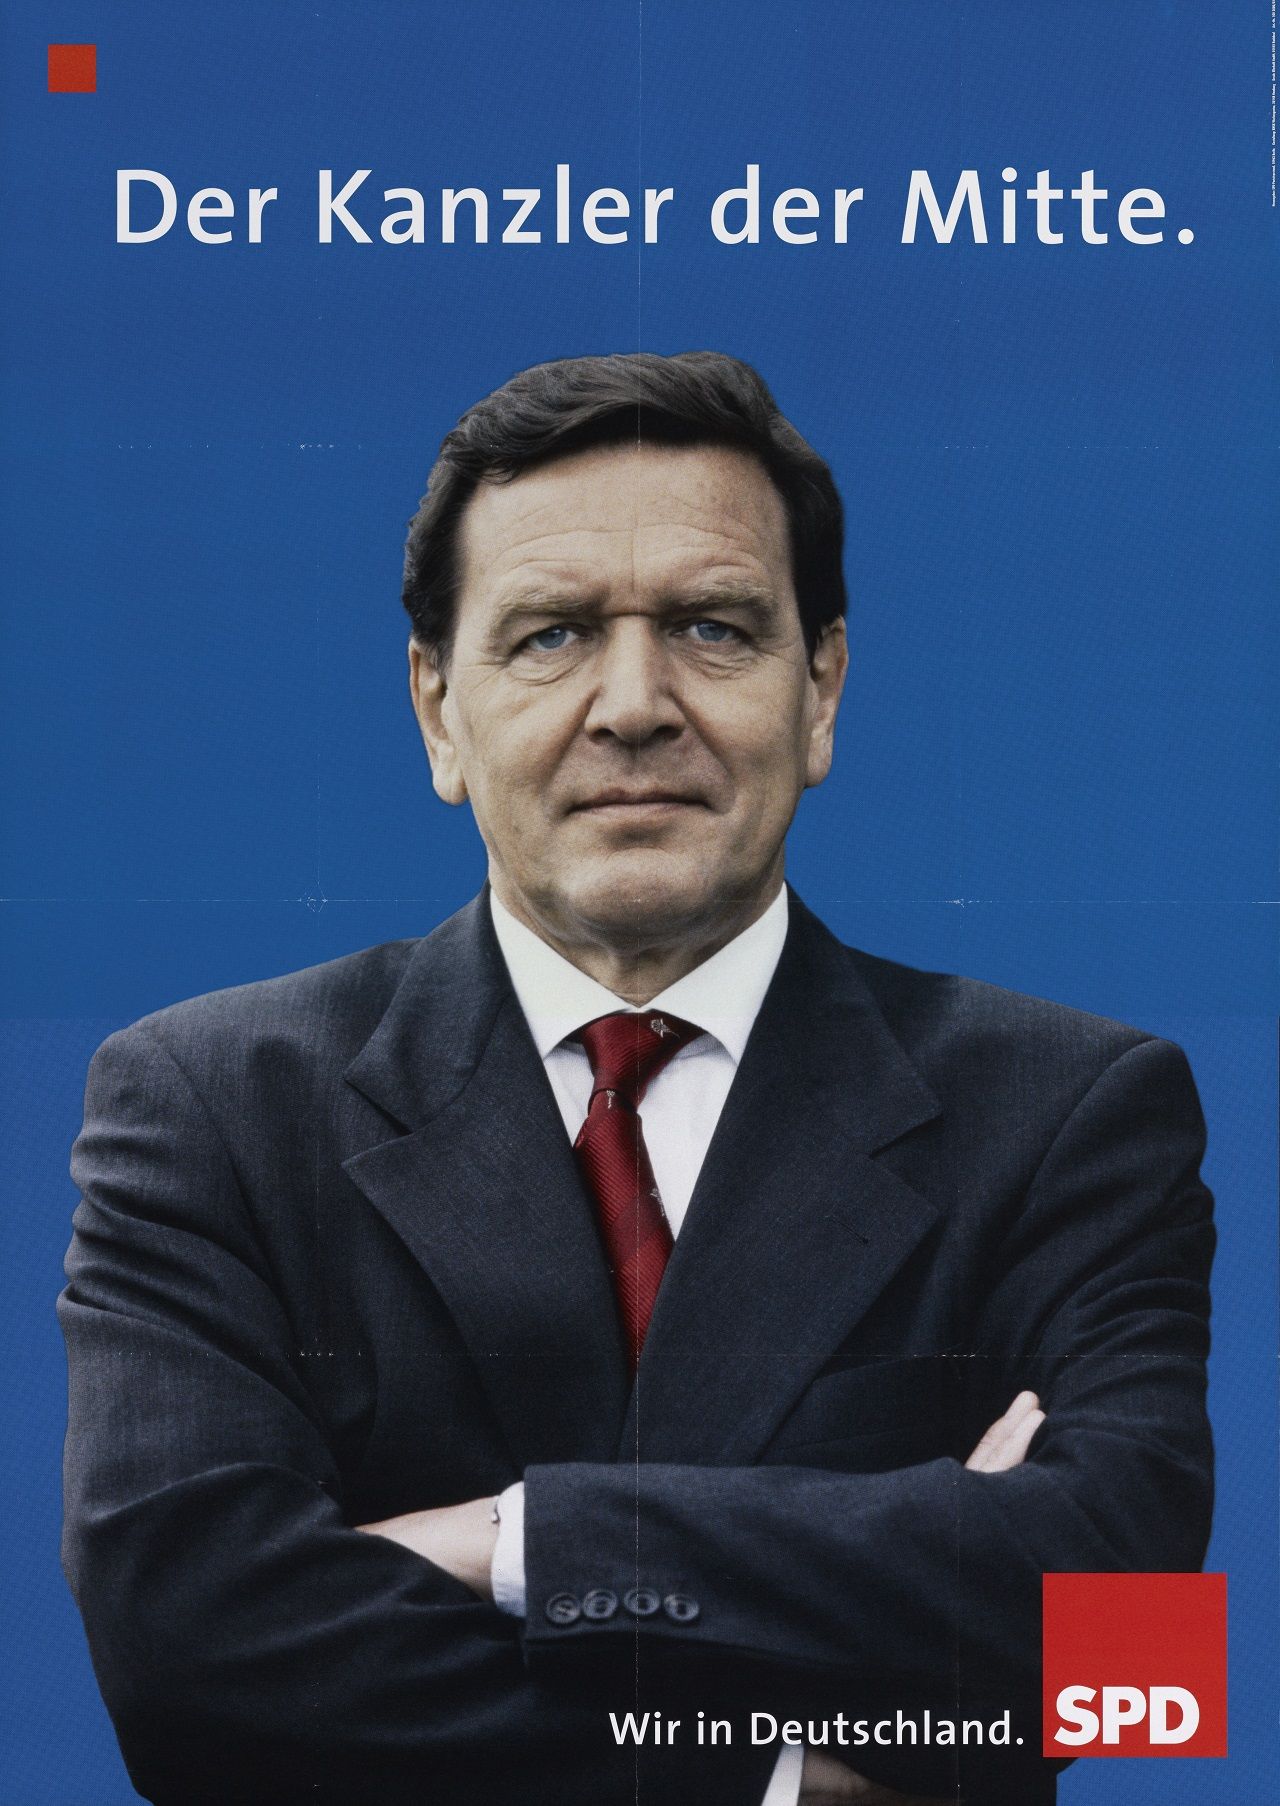 Porträtfoto von Gerhard Schröder mit verschränkten Armen vor blauem Hintergrund. Oben in weiß Bezeichnung, unten rechts: Wir in Deutschland. Rotes SPD-Logo.
